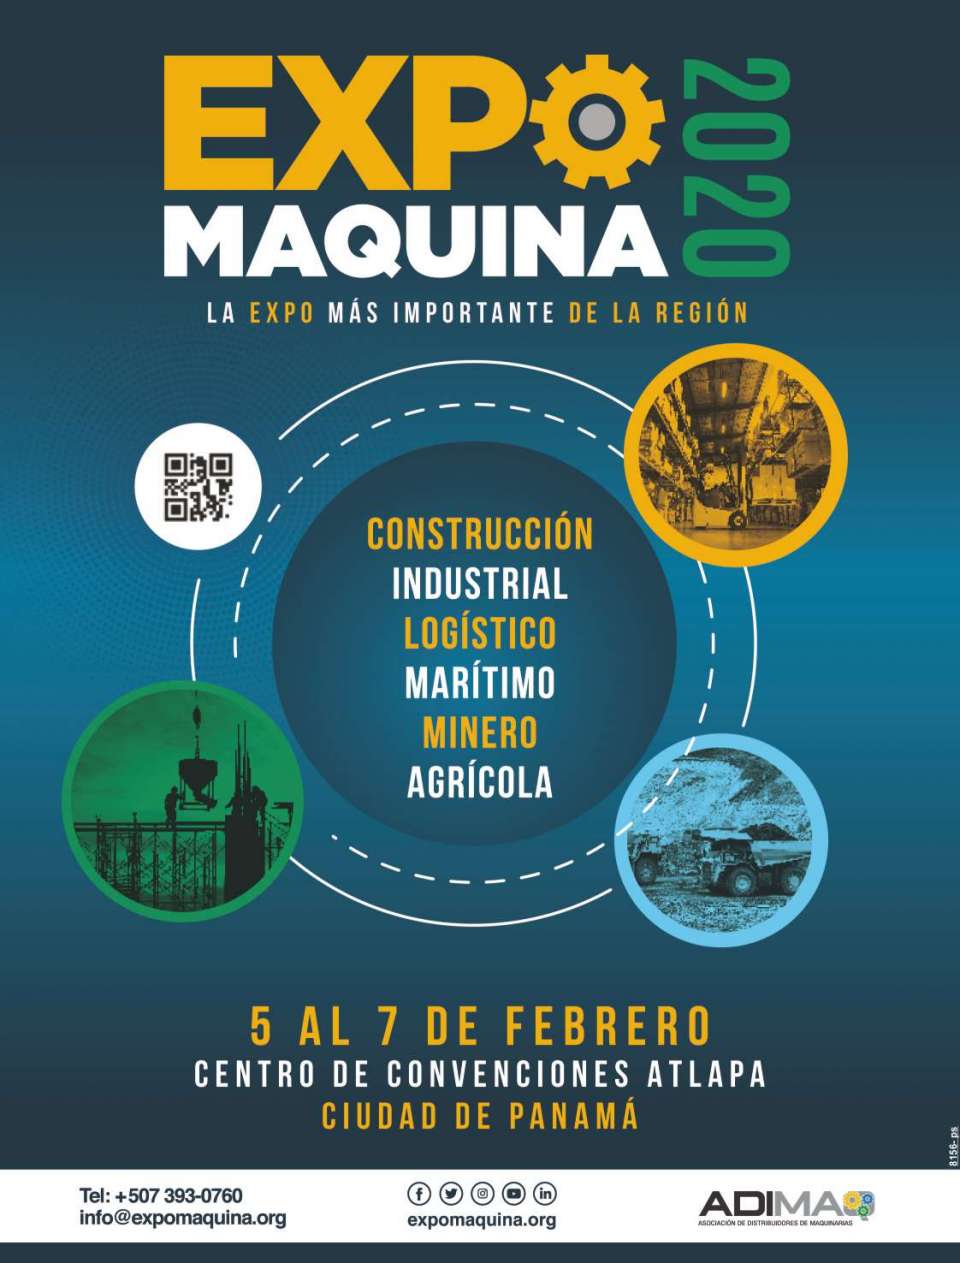 La expo mas importante de la region, del 5 al 7 de Febrero 2020 en Centro de Convenciones Atlapa, en la Ciudad de Panama